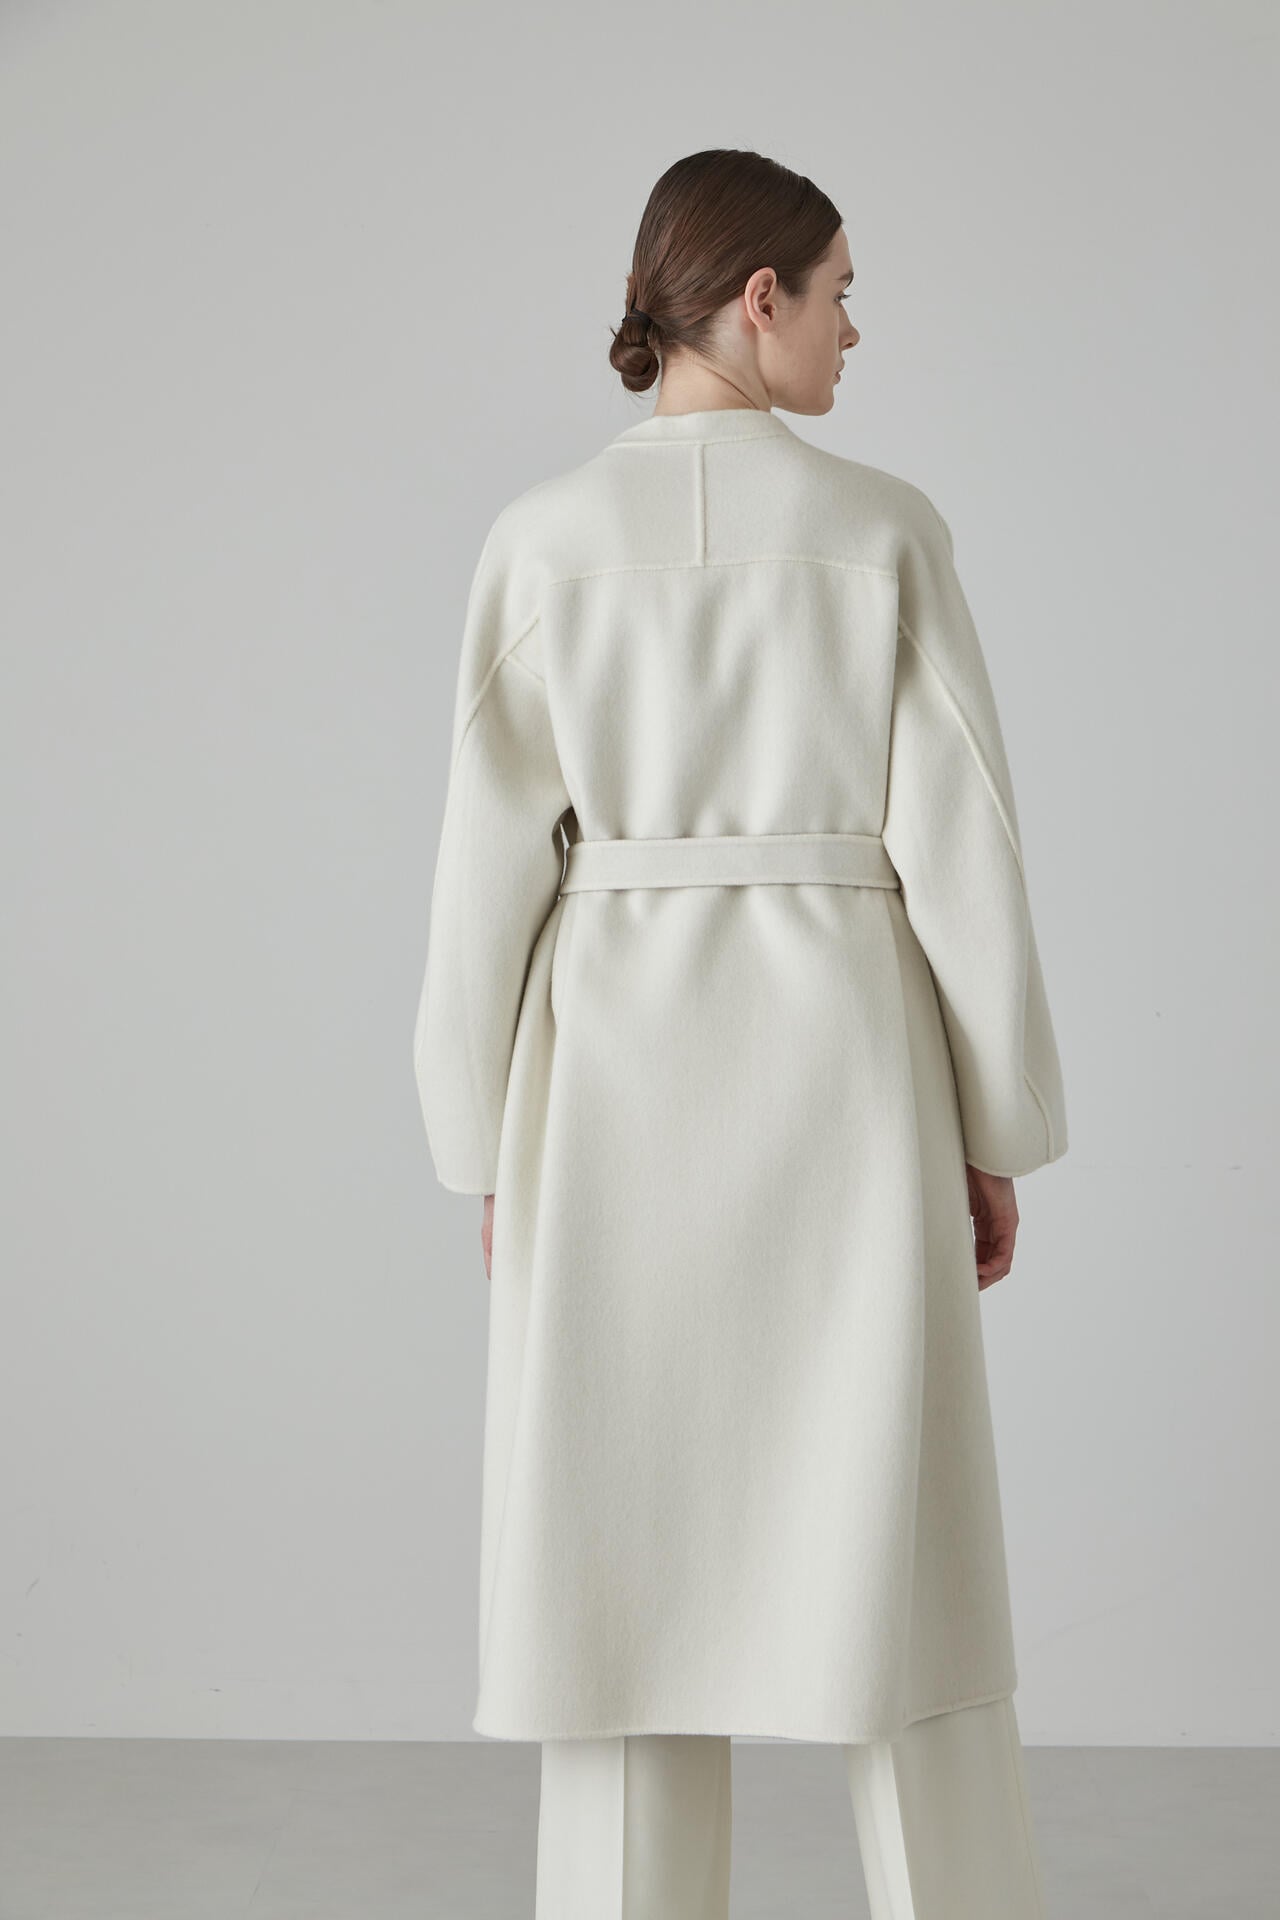 厚みのあるロング丈の米白の両面のカシミヤコートサイズ - ロングコート